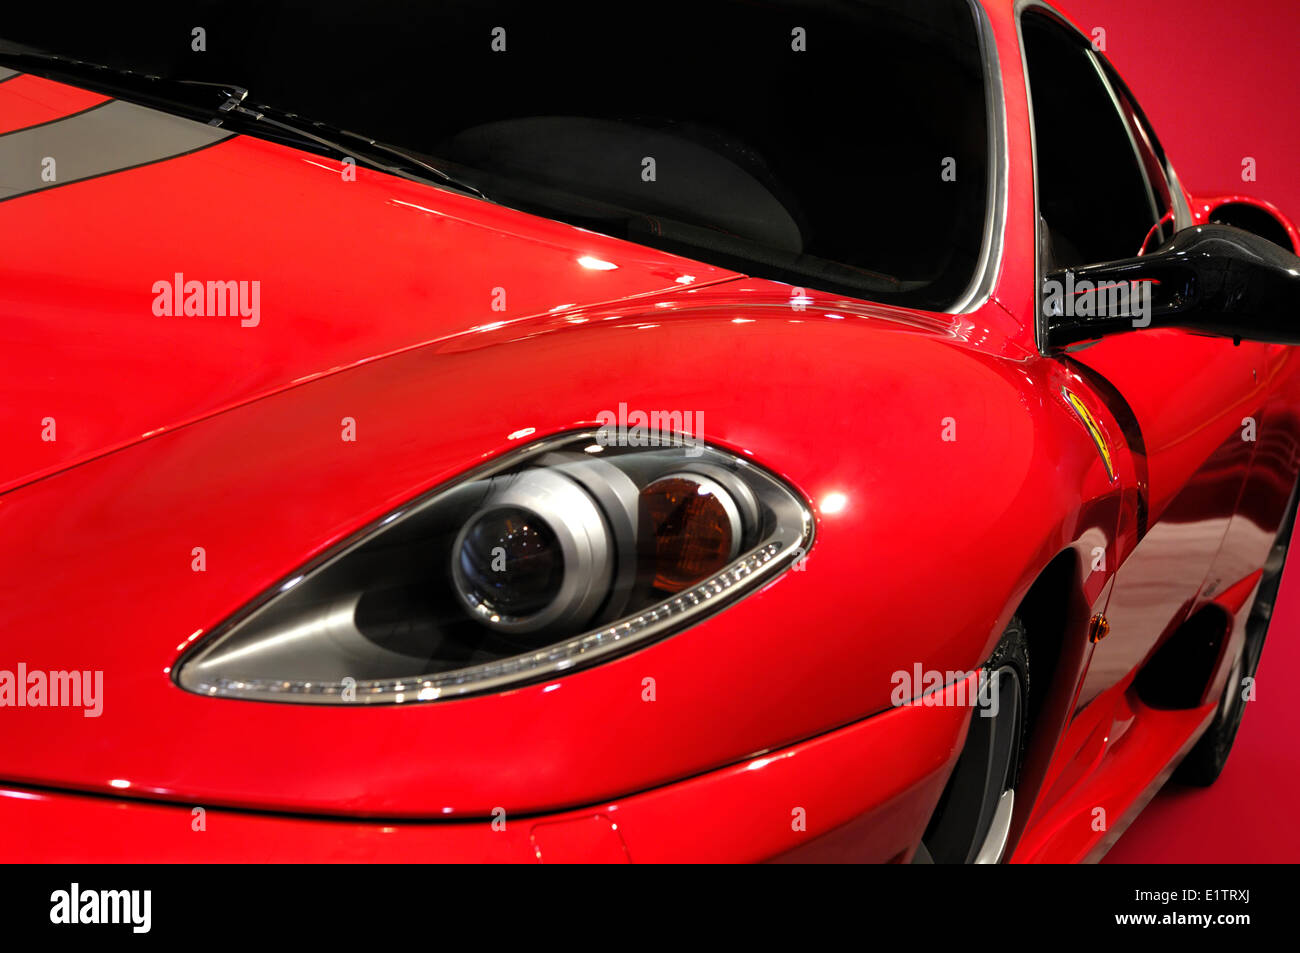 Red Ferrari F430 Scuderia super car closeup Stock Photo